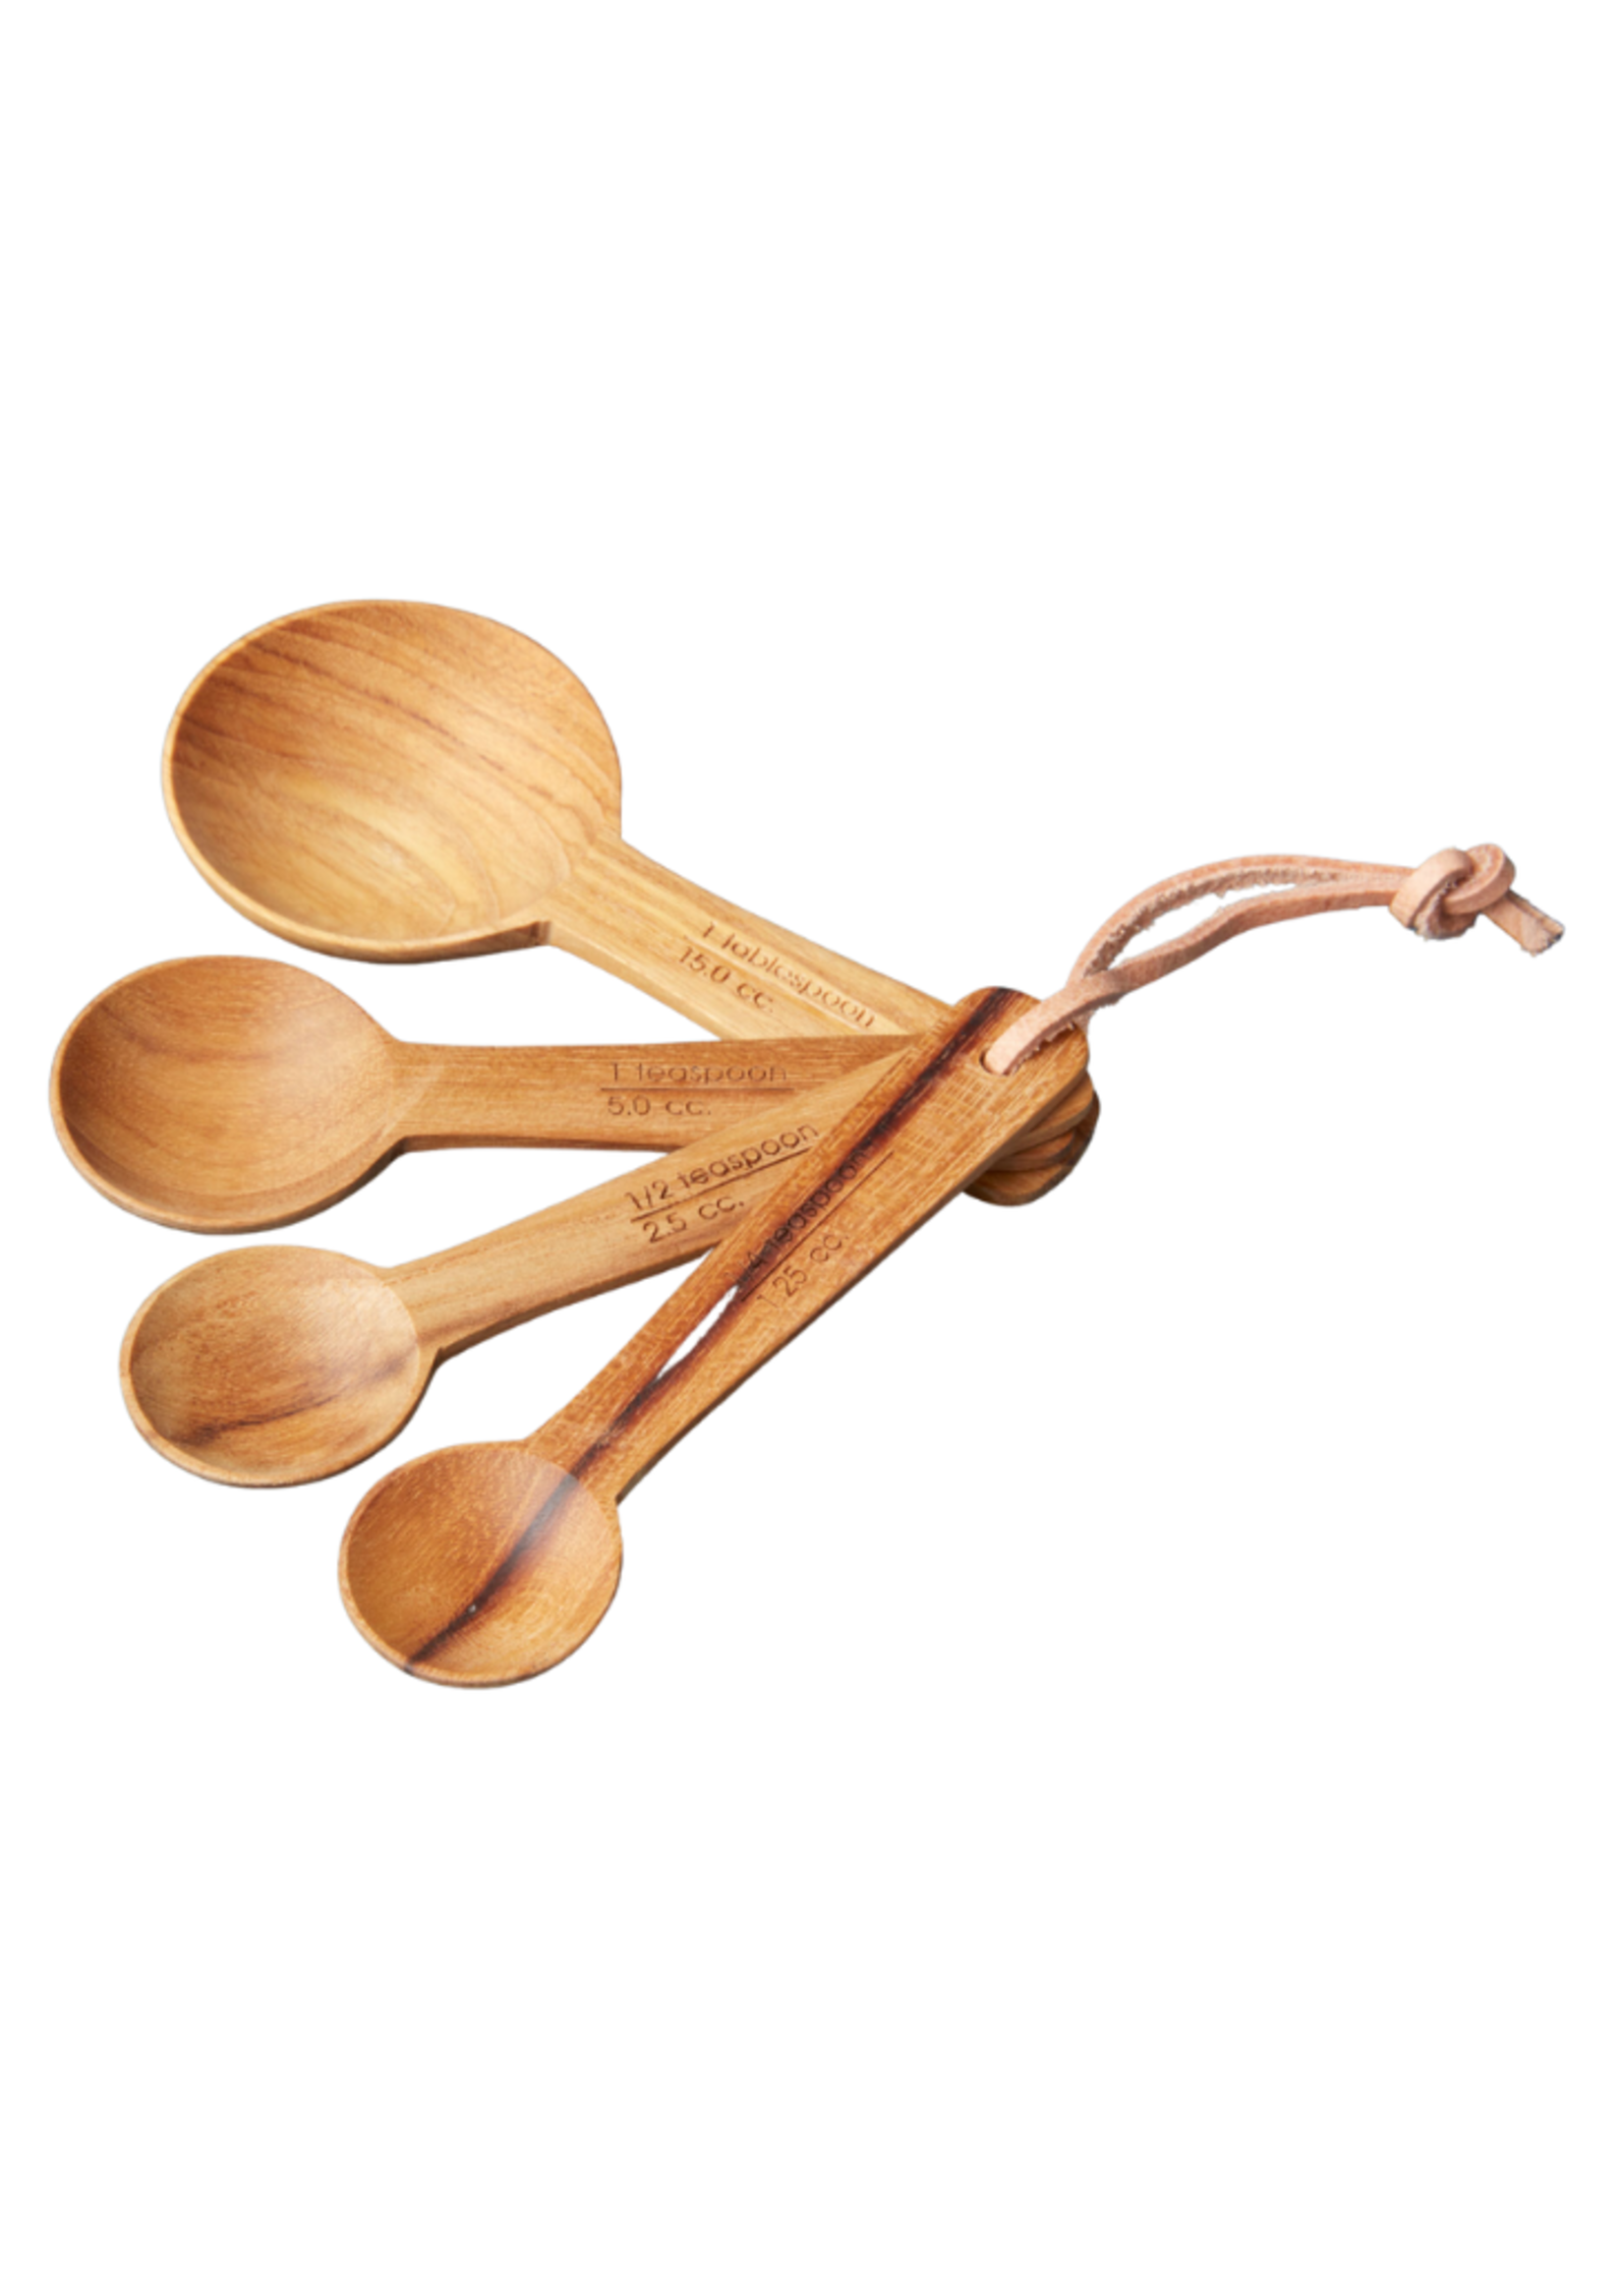 Be Home Teak Measuring Spoons Set of 4